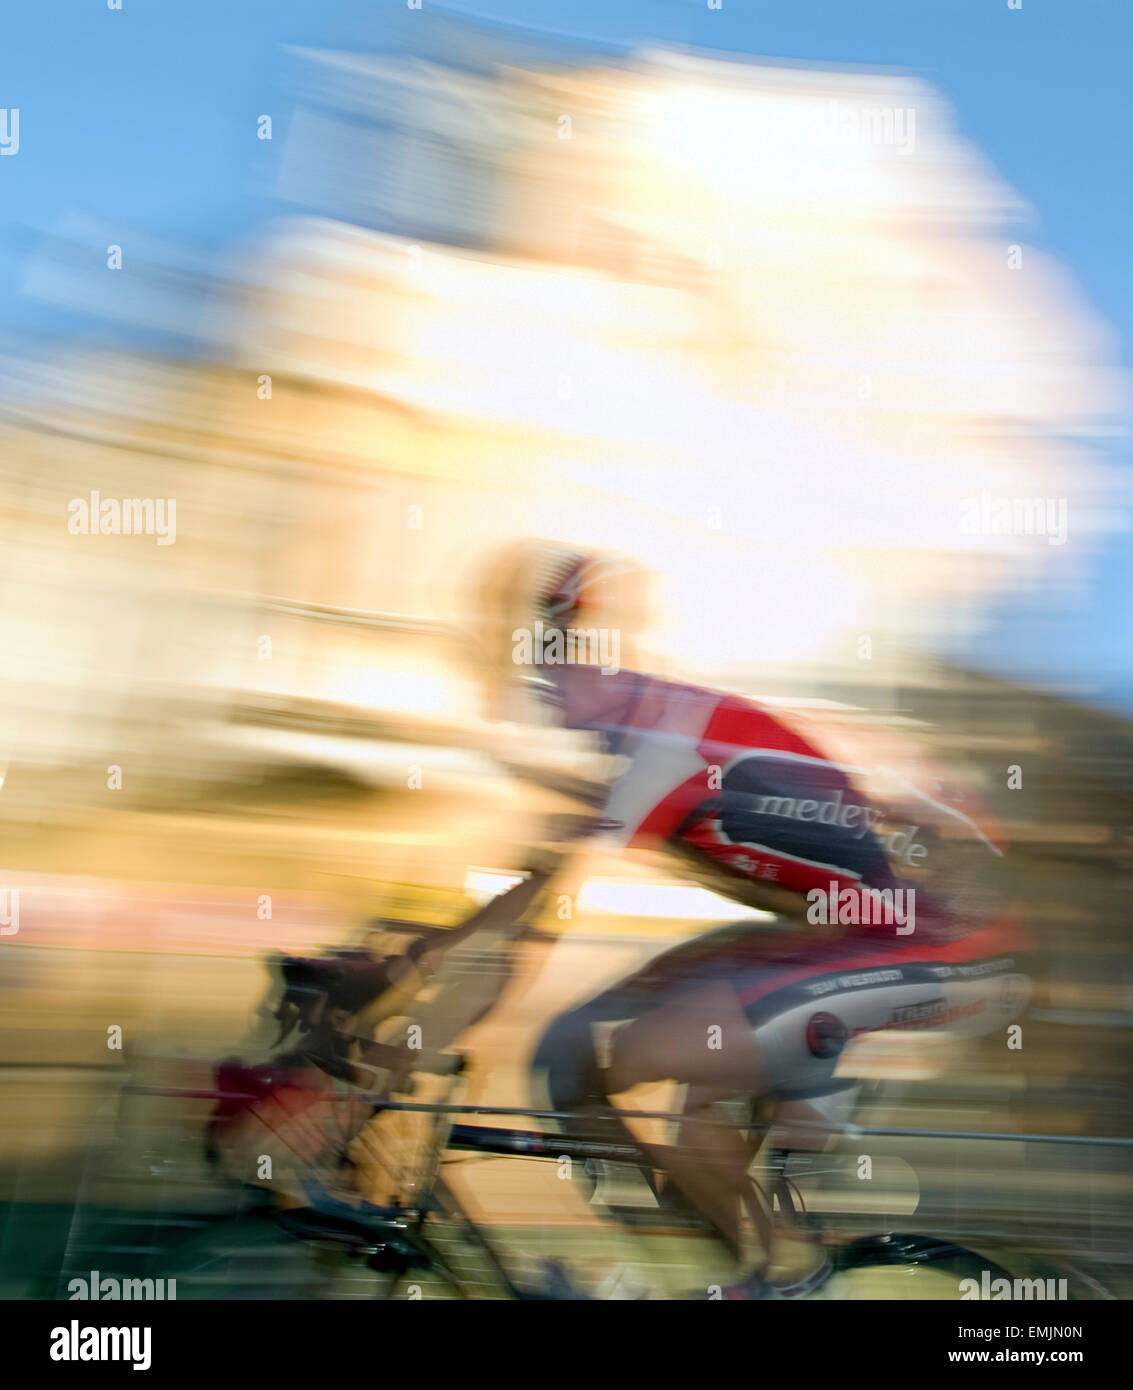 Bicyclist blurred Stock Photo - Alamy